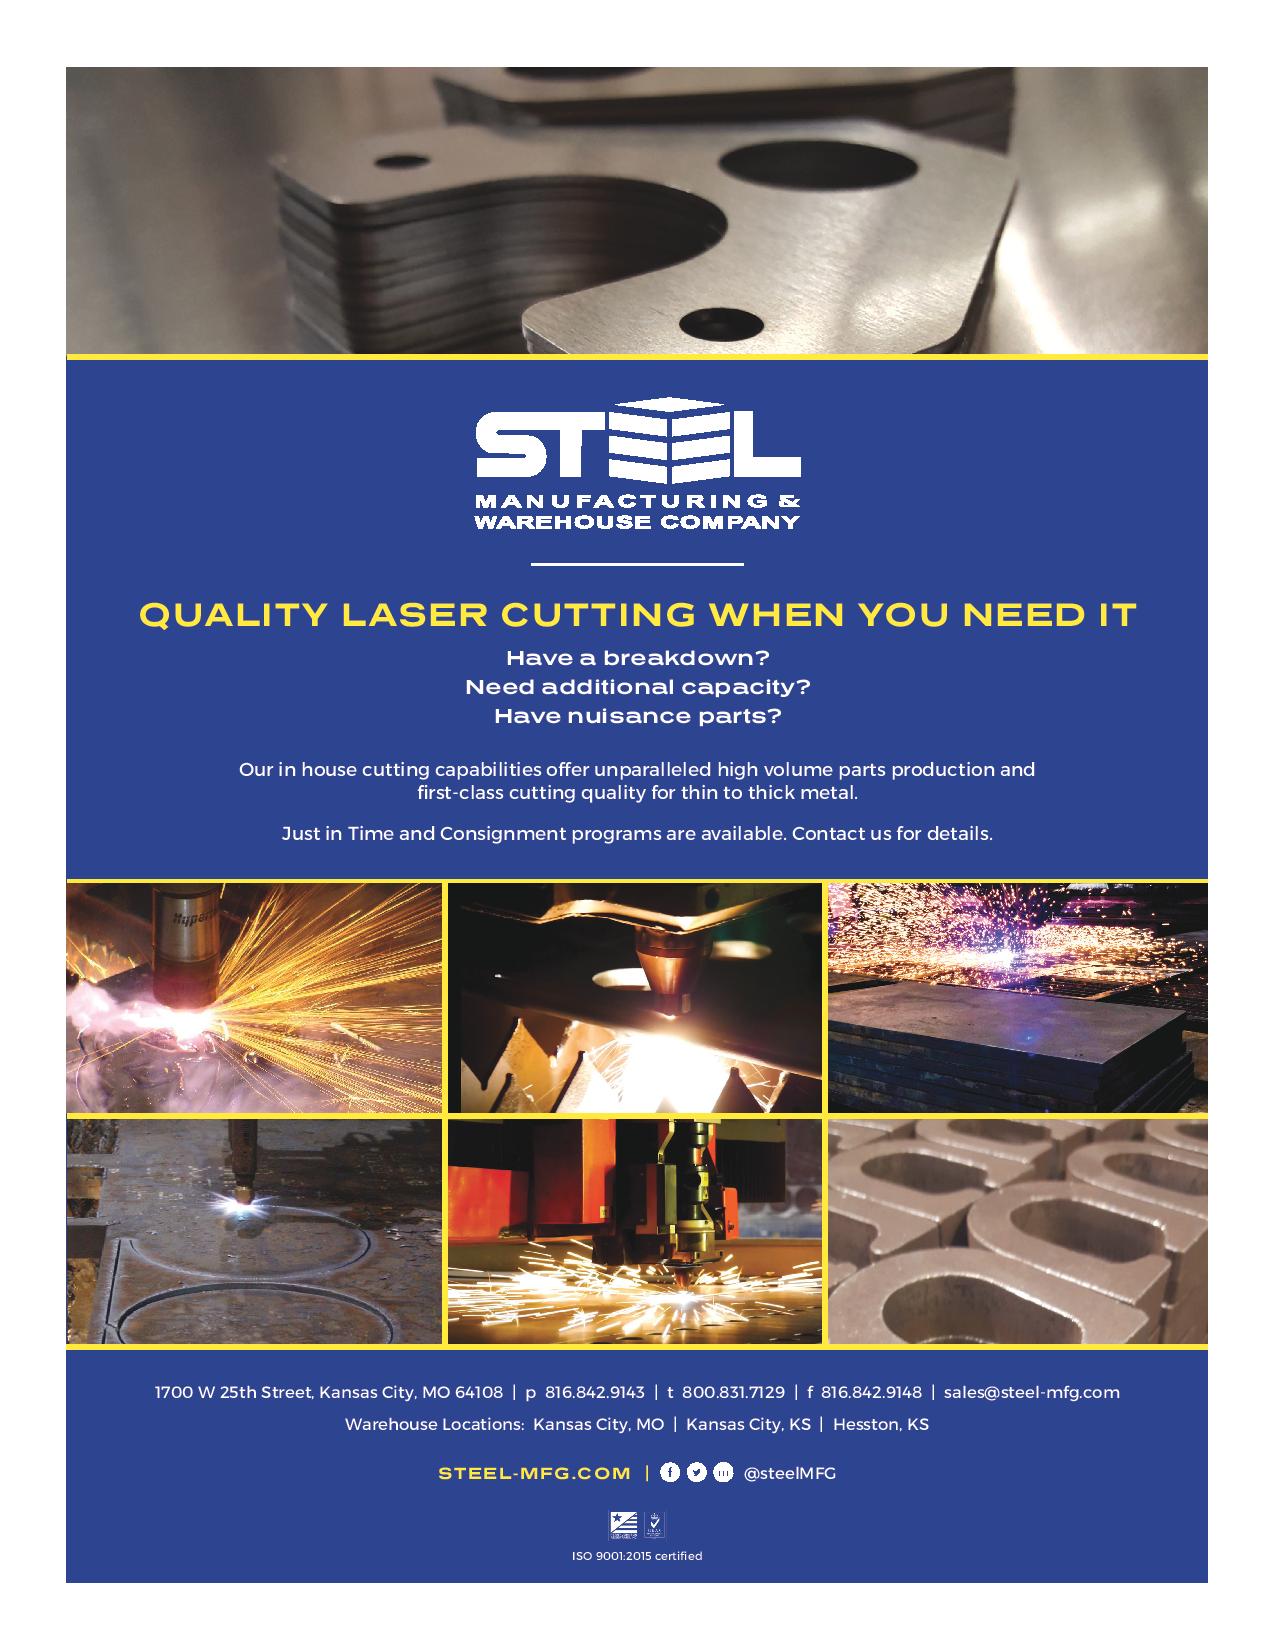 Steel-Mfg-Laser Cutting page 1